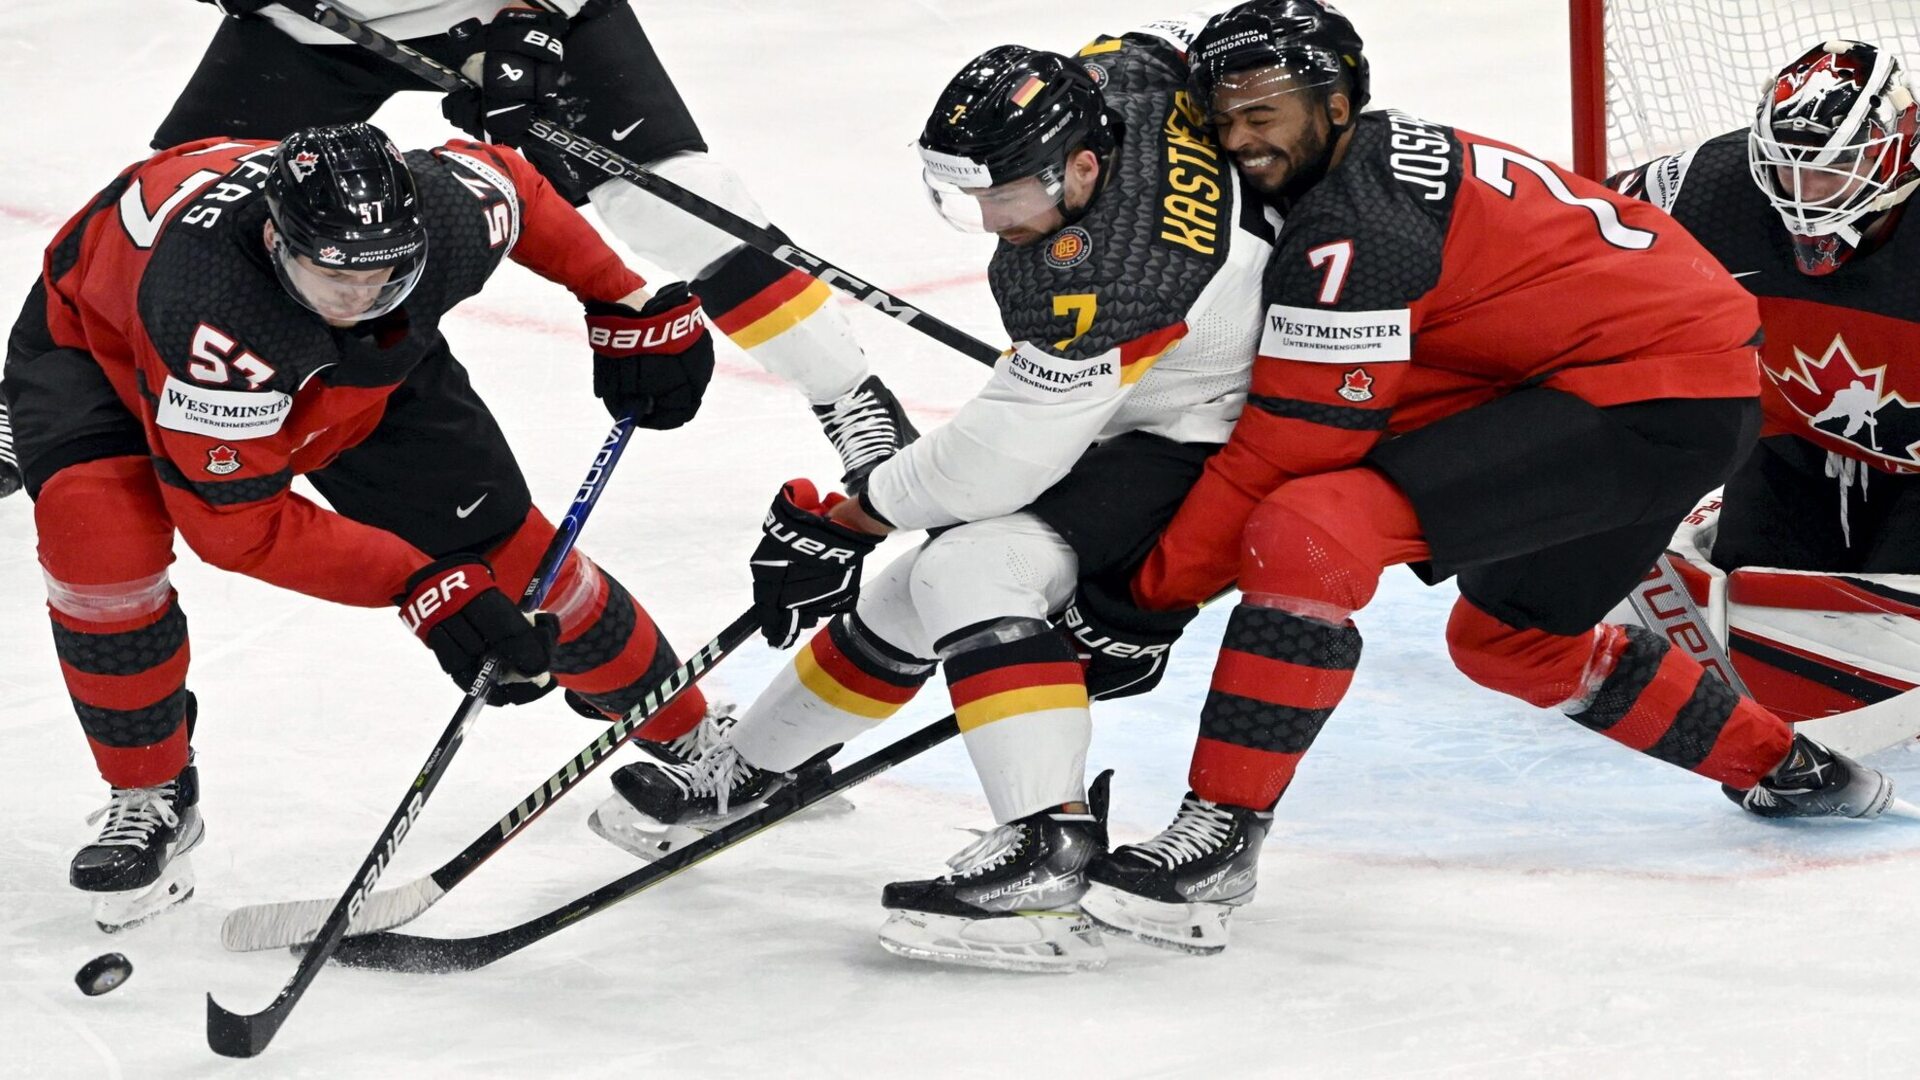 Eishockey: WM, Kanada - Deutschland, Finalrunde, Finale: Tyler Myers (l) und Pierre-Olivier Joseph (r) aus Kanada gegen Maximilian Kastner aus Deutschland.